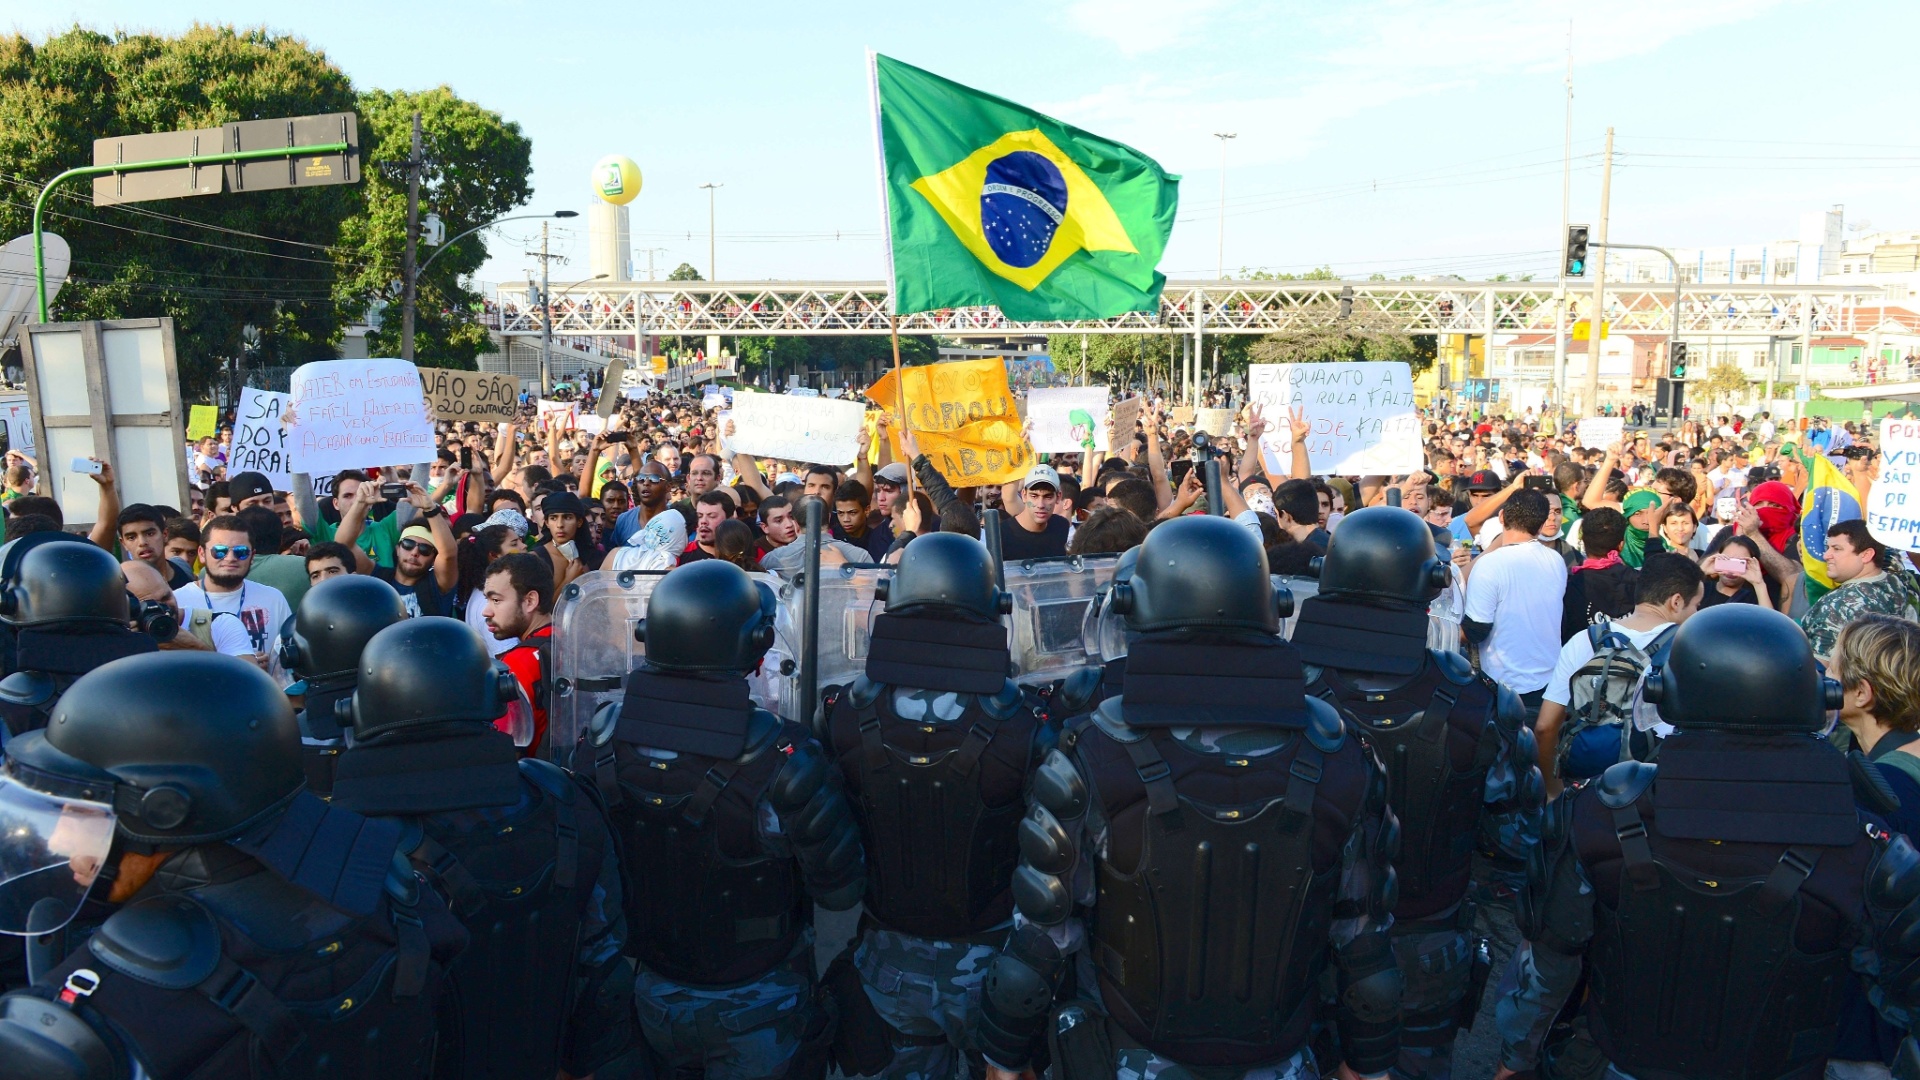 16.jun.2013 - Polícia faz cordão de isolamento contra manifestantes nos arredores do Maracanã